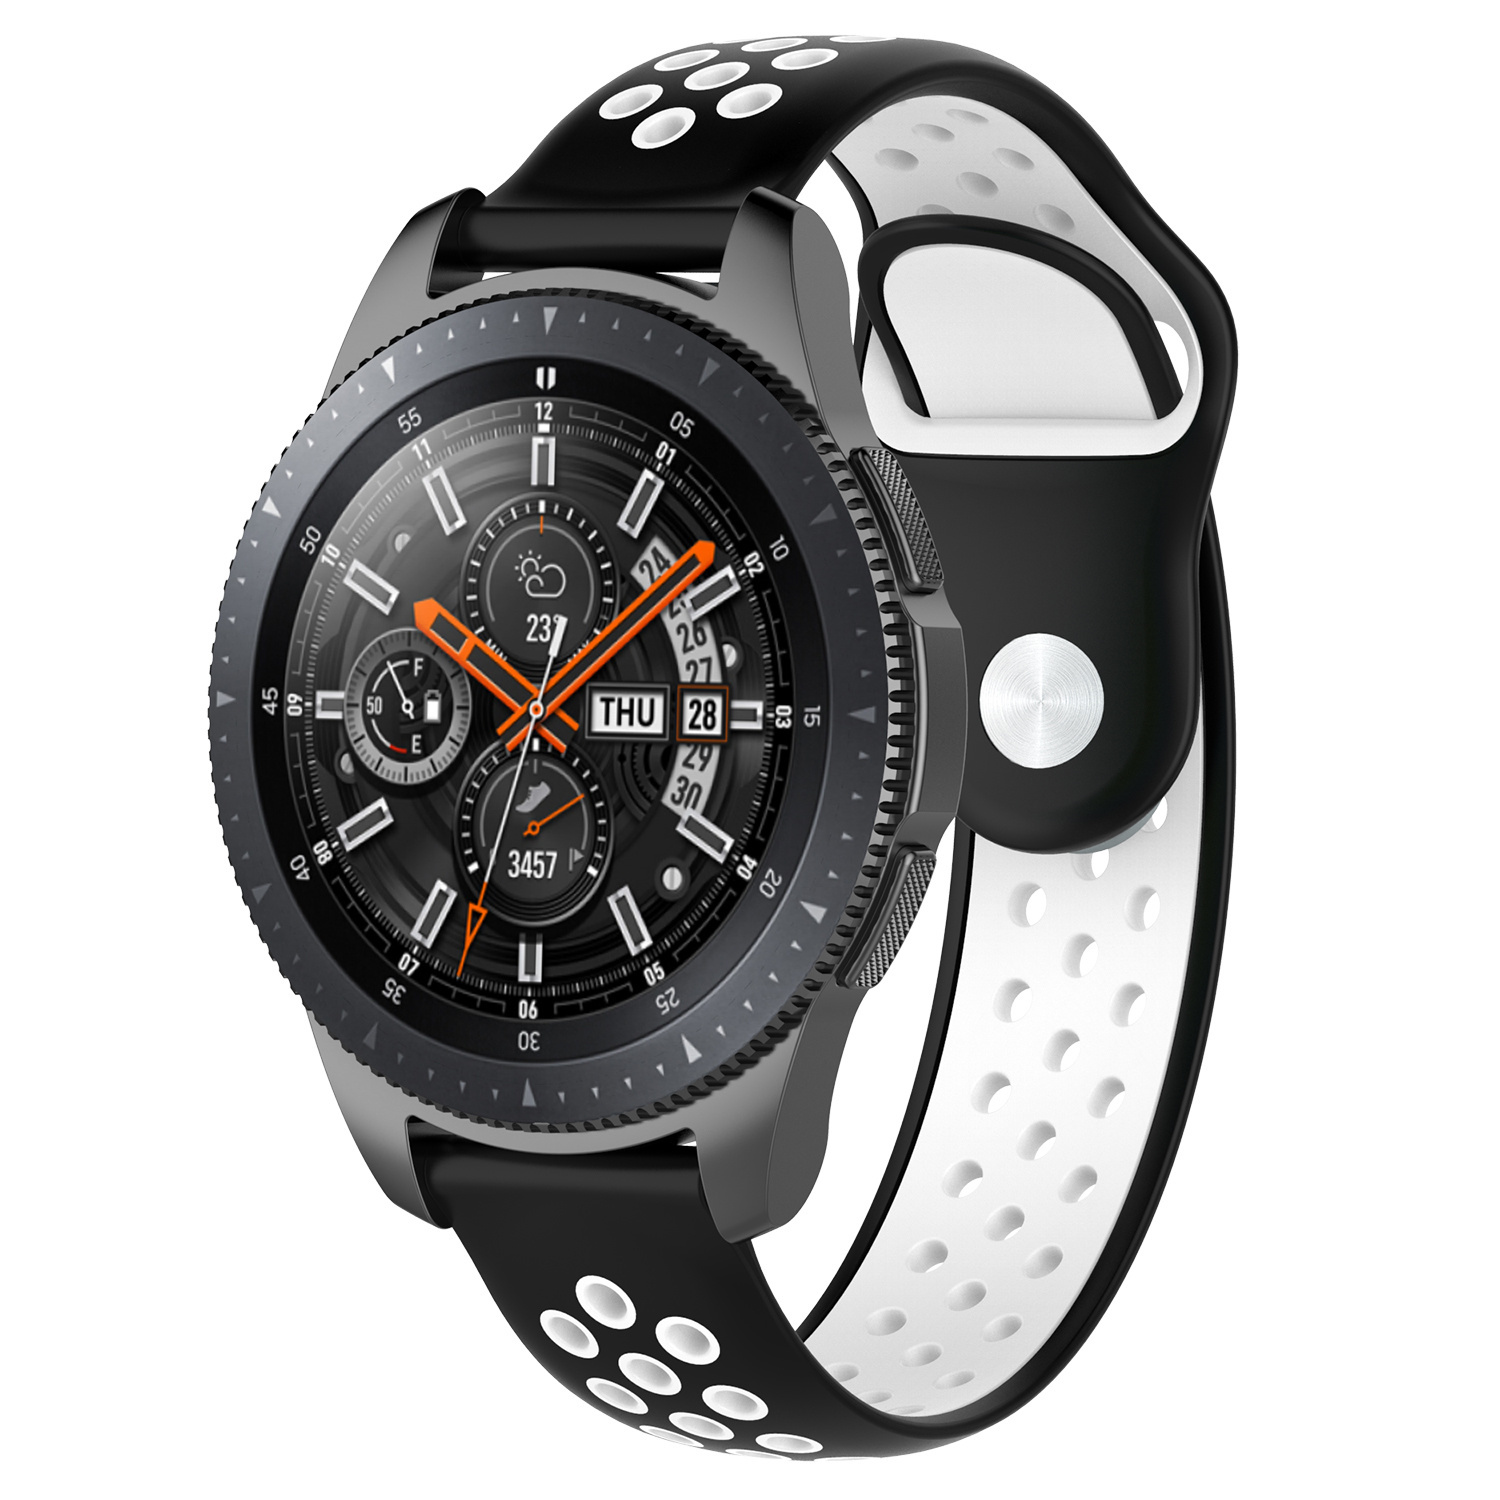 Samsung Galaxy Watch dupla sport szalag - fekete-fehér